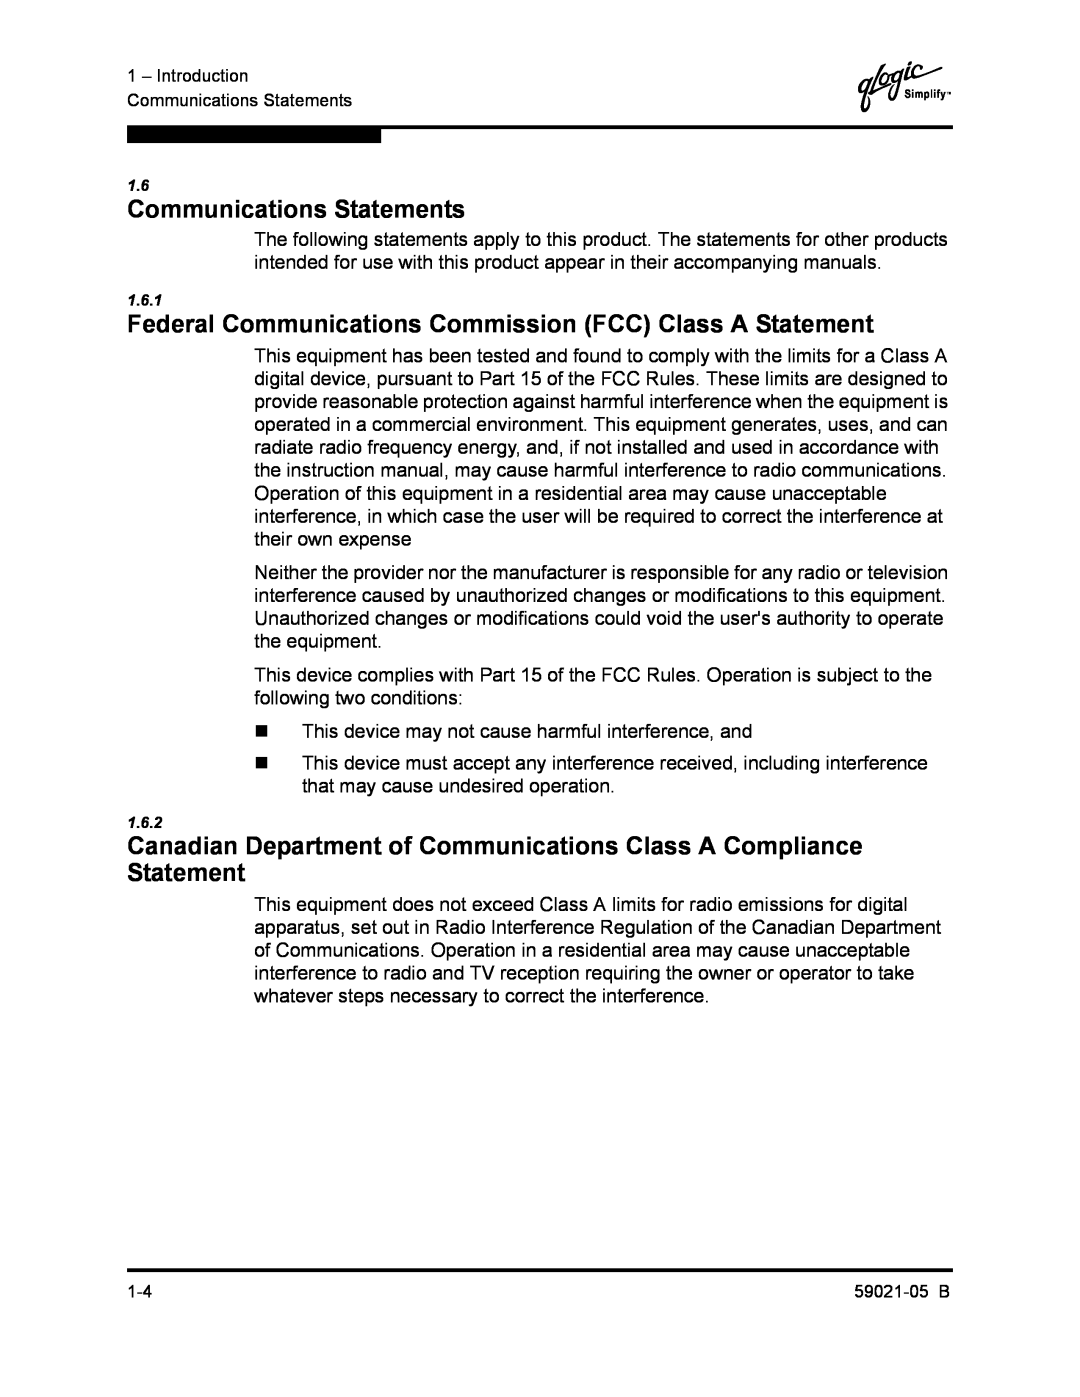 Q-Logic 59021-05 B manual Communications Statements, Federal Communications Commission FCC Class A Statement 